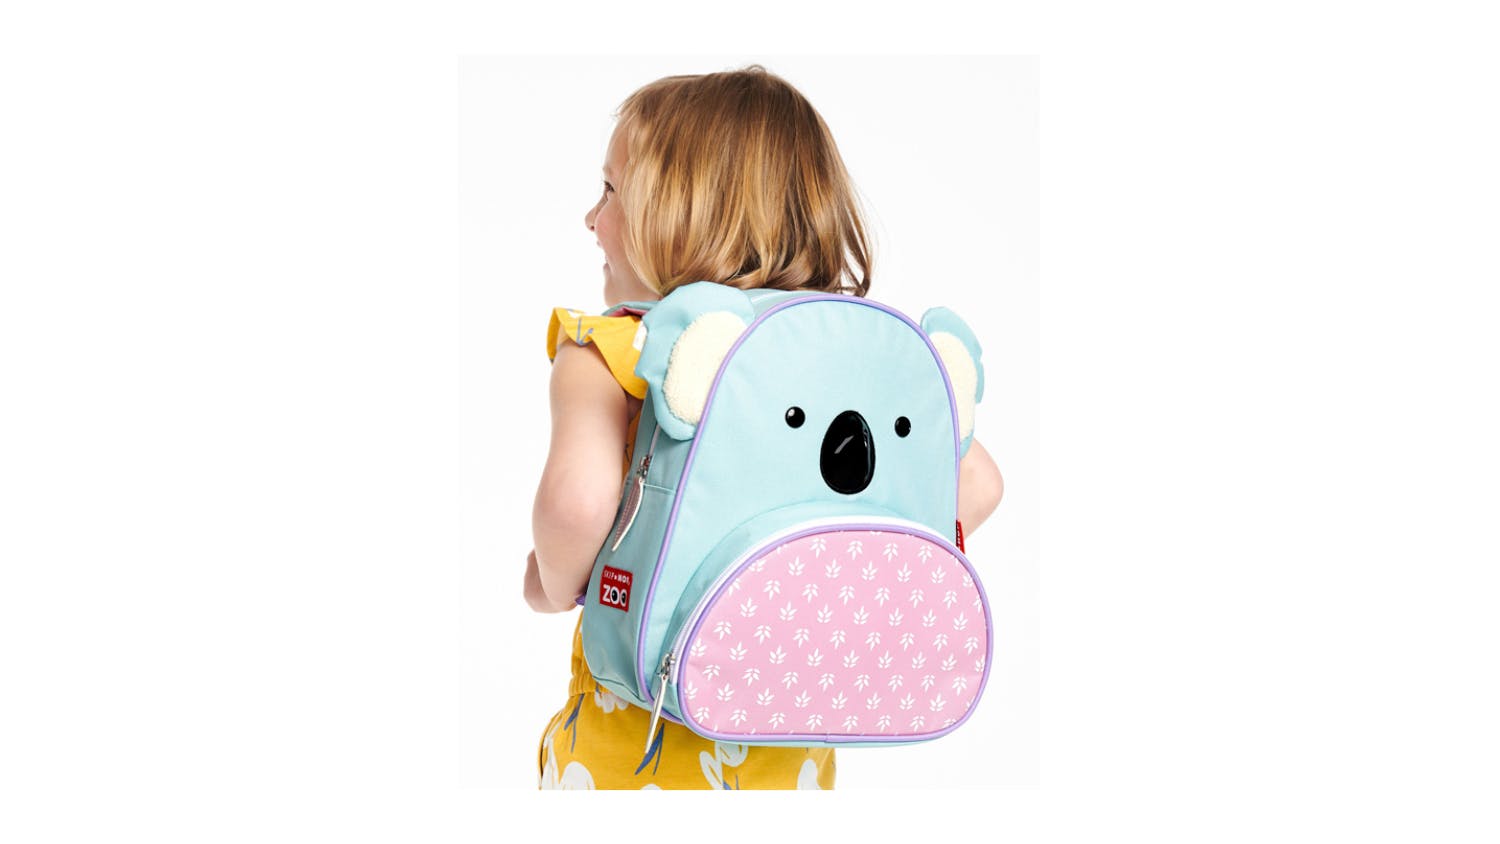 Skip Hop Zoo Little Kid Backpack - Koala